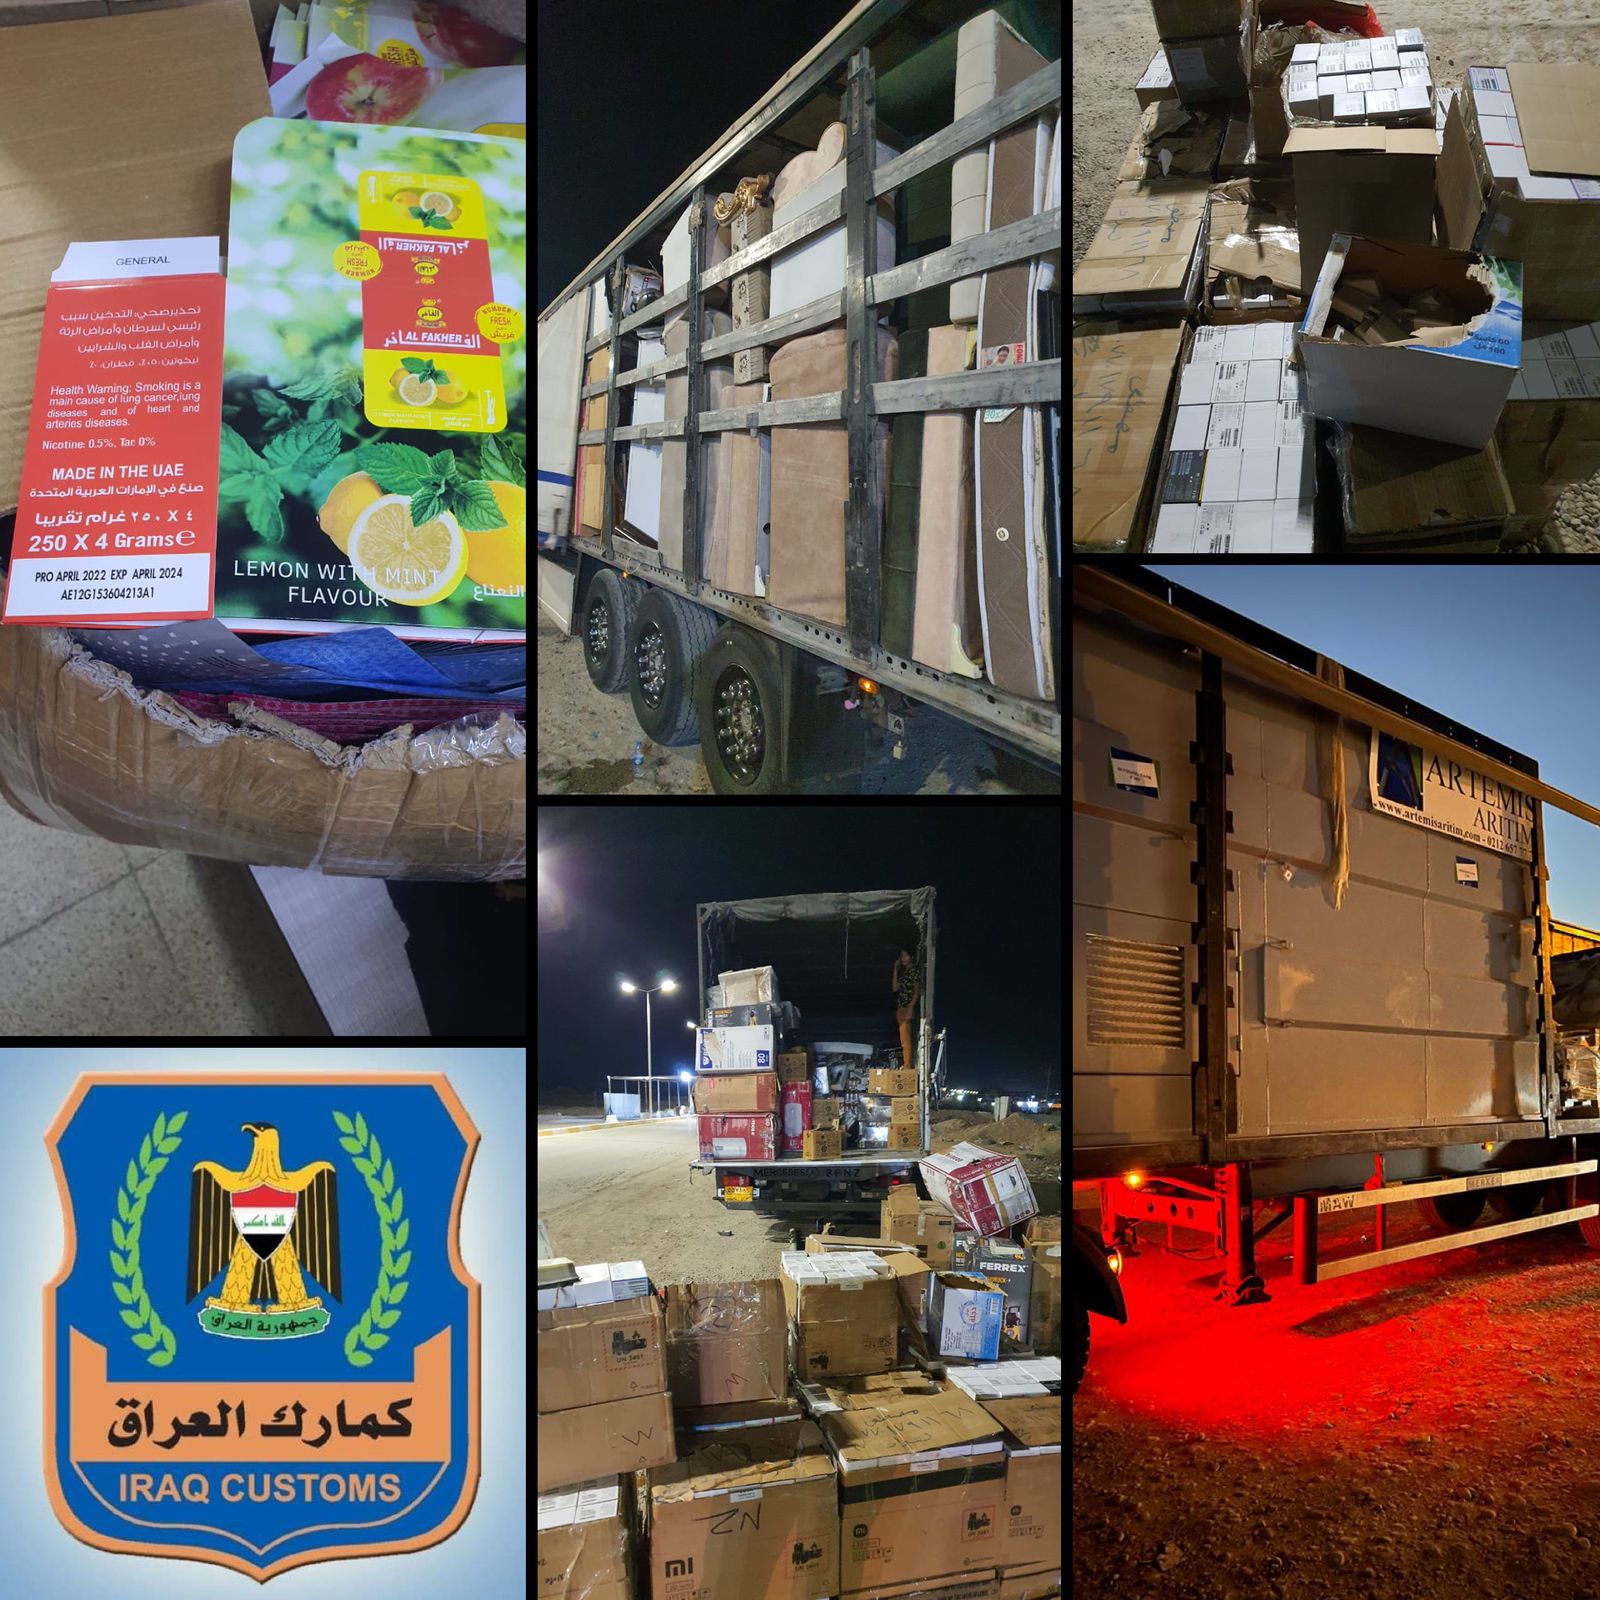 الكمارك ،،، التحري و مكافحة التهريب تضبط ( ٧ ) شاحنات مخالفة عند مداخل محافظة نينوى